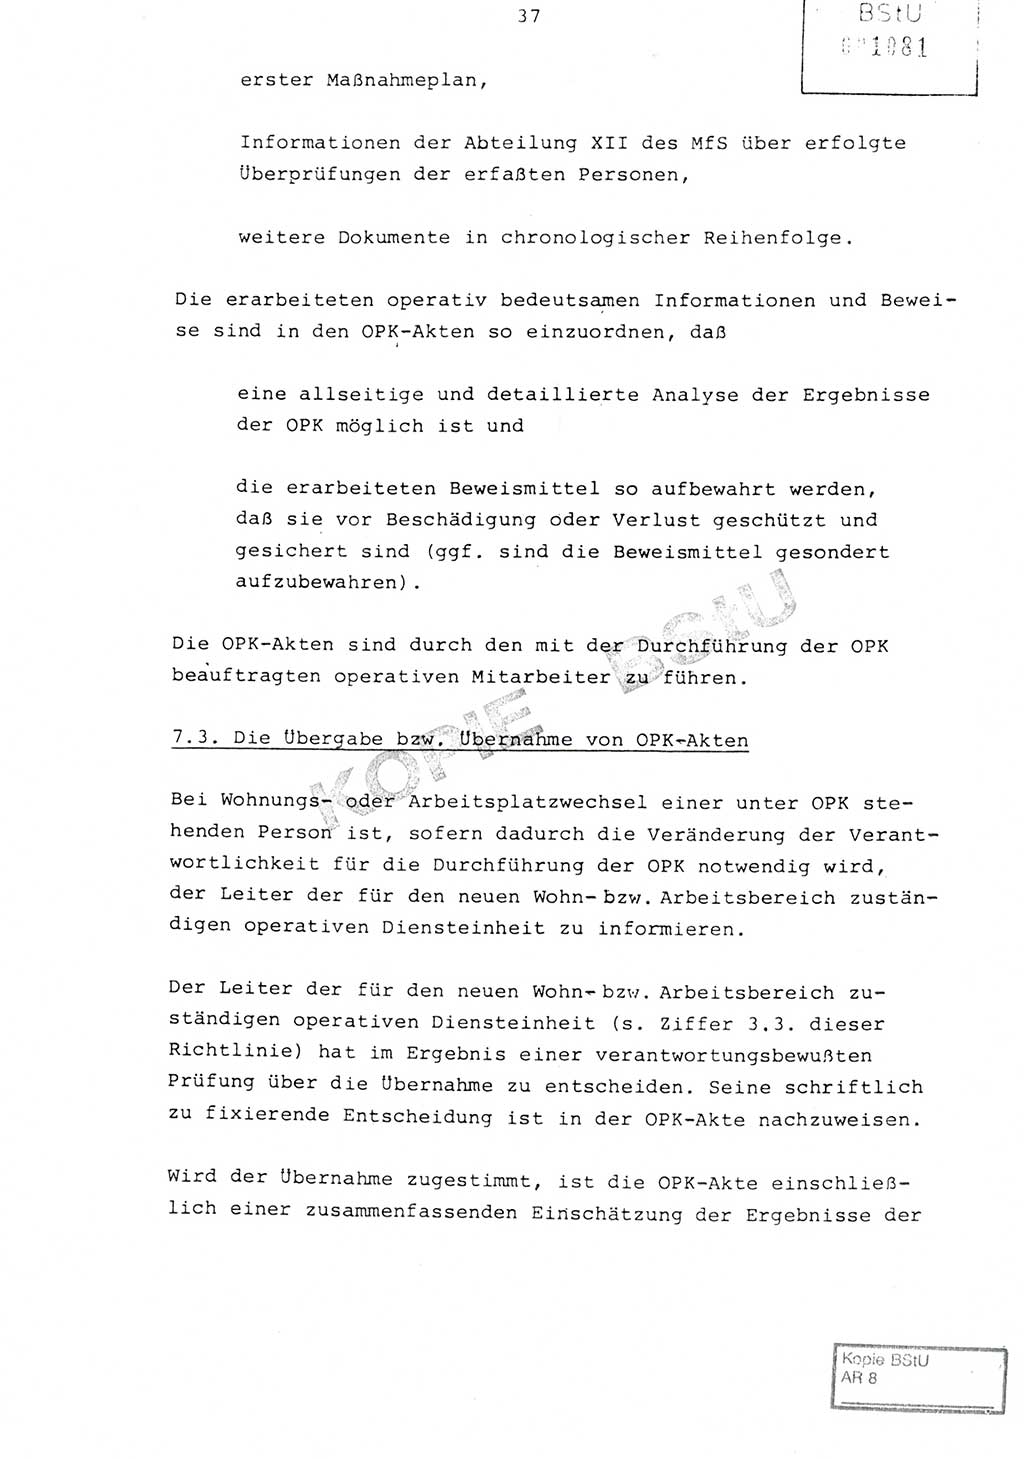 Richtlinie Nr. 1/81 über die operative Personenkontrolle (OPK), Ministerium für Staatssicherheit (MfS) [Deutsche Demokratische Republik (DDR)], Der Minister, Geheime Verschlußsache (GVS) ooo8-10/81, Berlin 1981, Blatt 37 (RL 1/81 OPK DDR MfS Min. GVS ooo8-10/81 1981, Bl. 37)